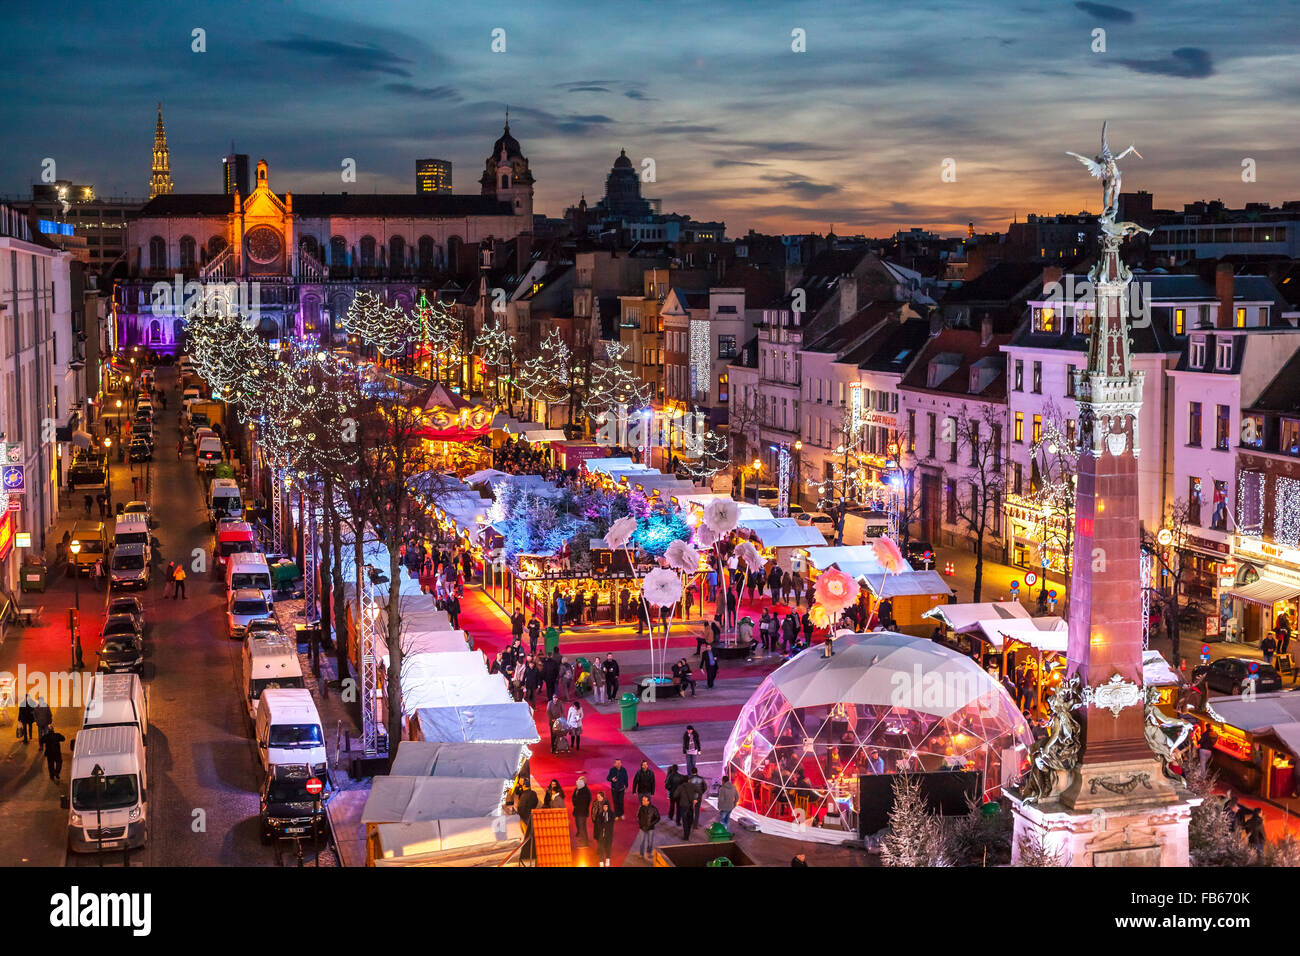 Belgique, Bruxelles Marché de Noël ou d'hiver Merveilles, Marché aux Poissons, le marché aux poissons à côté de l'église St Catherine. Banque D'Images